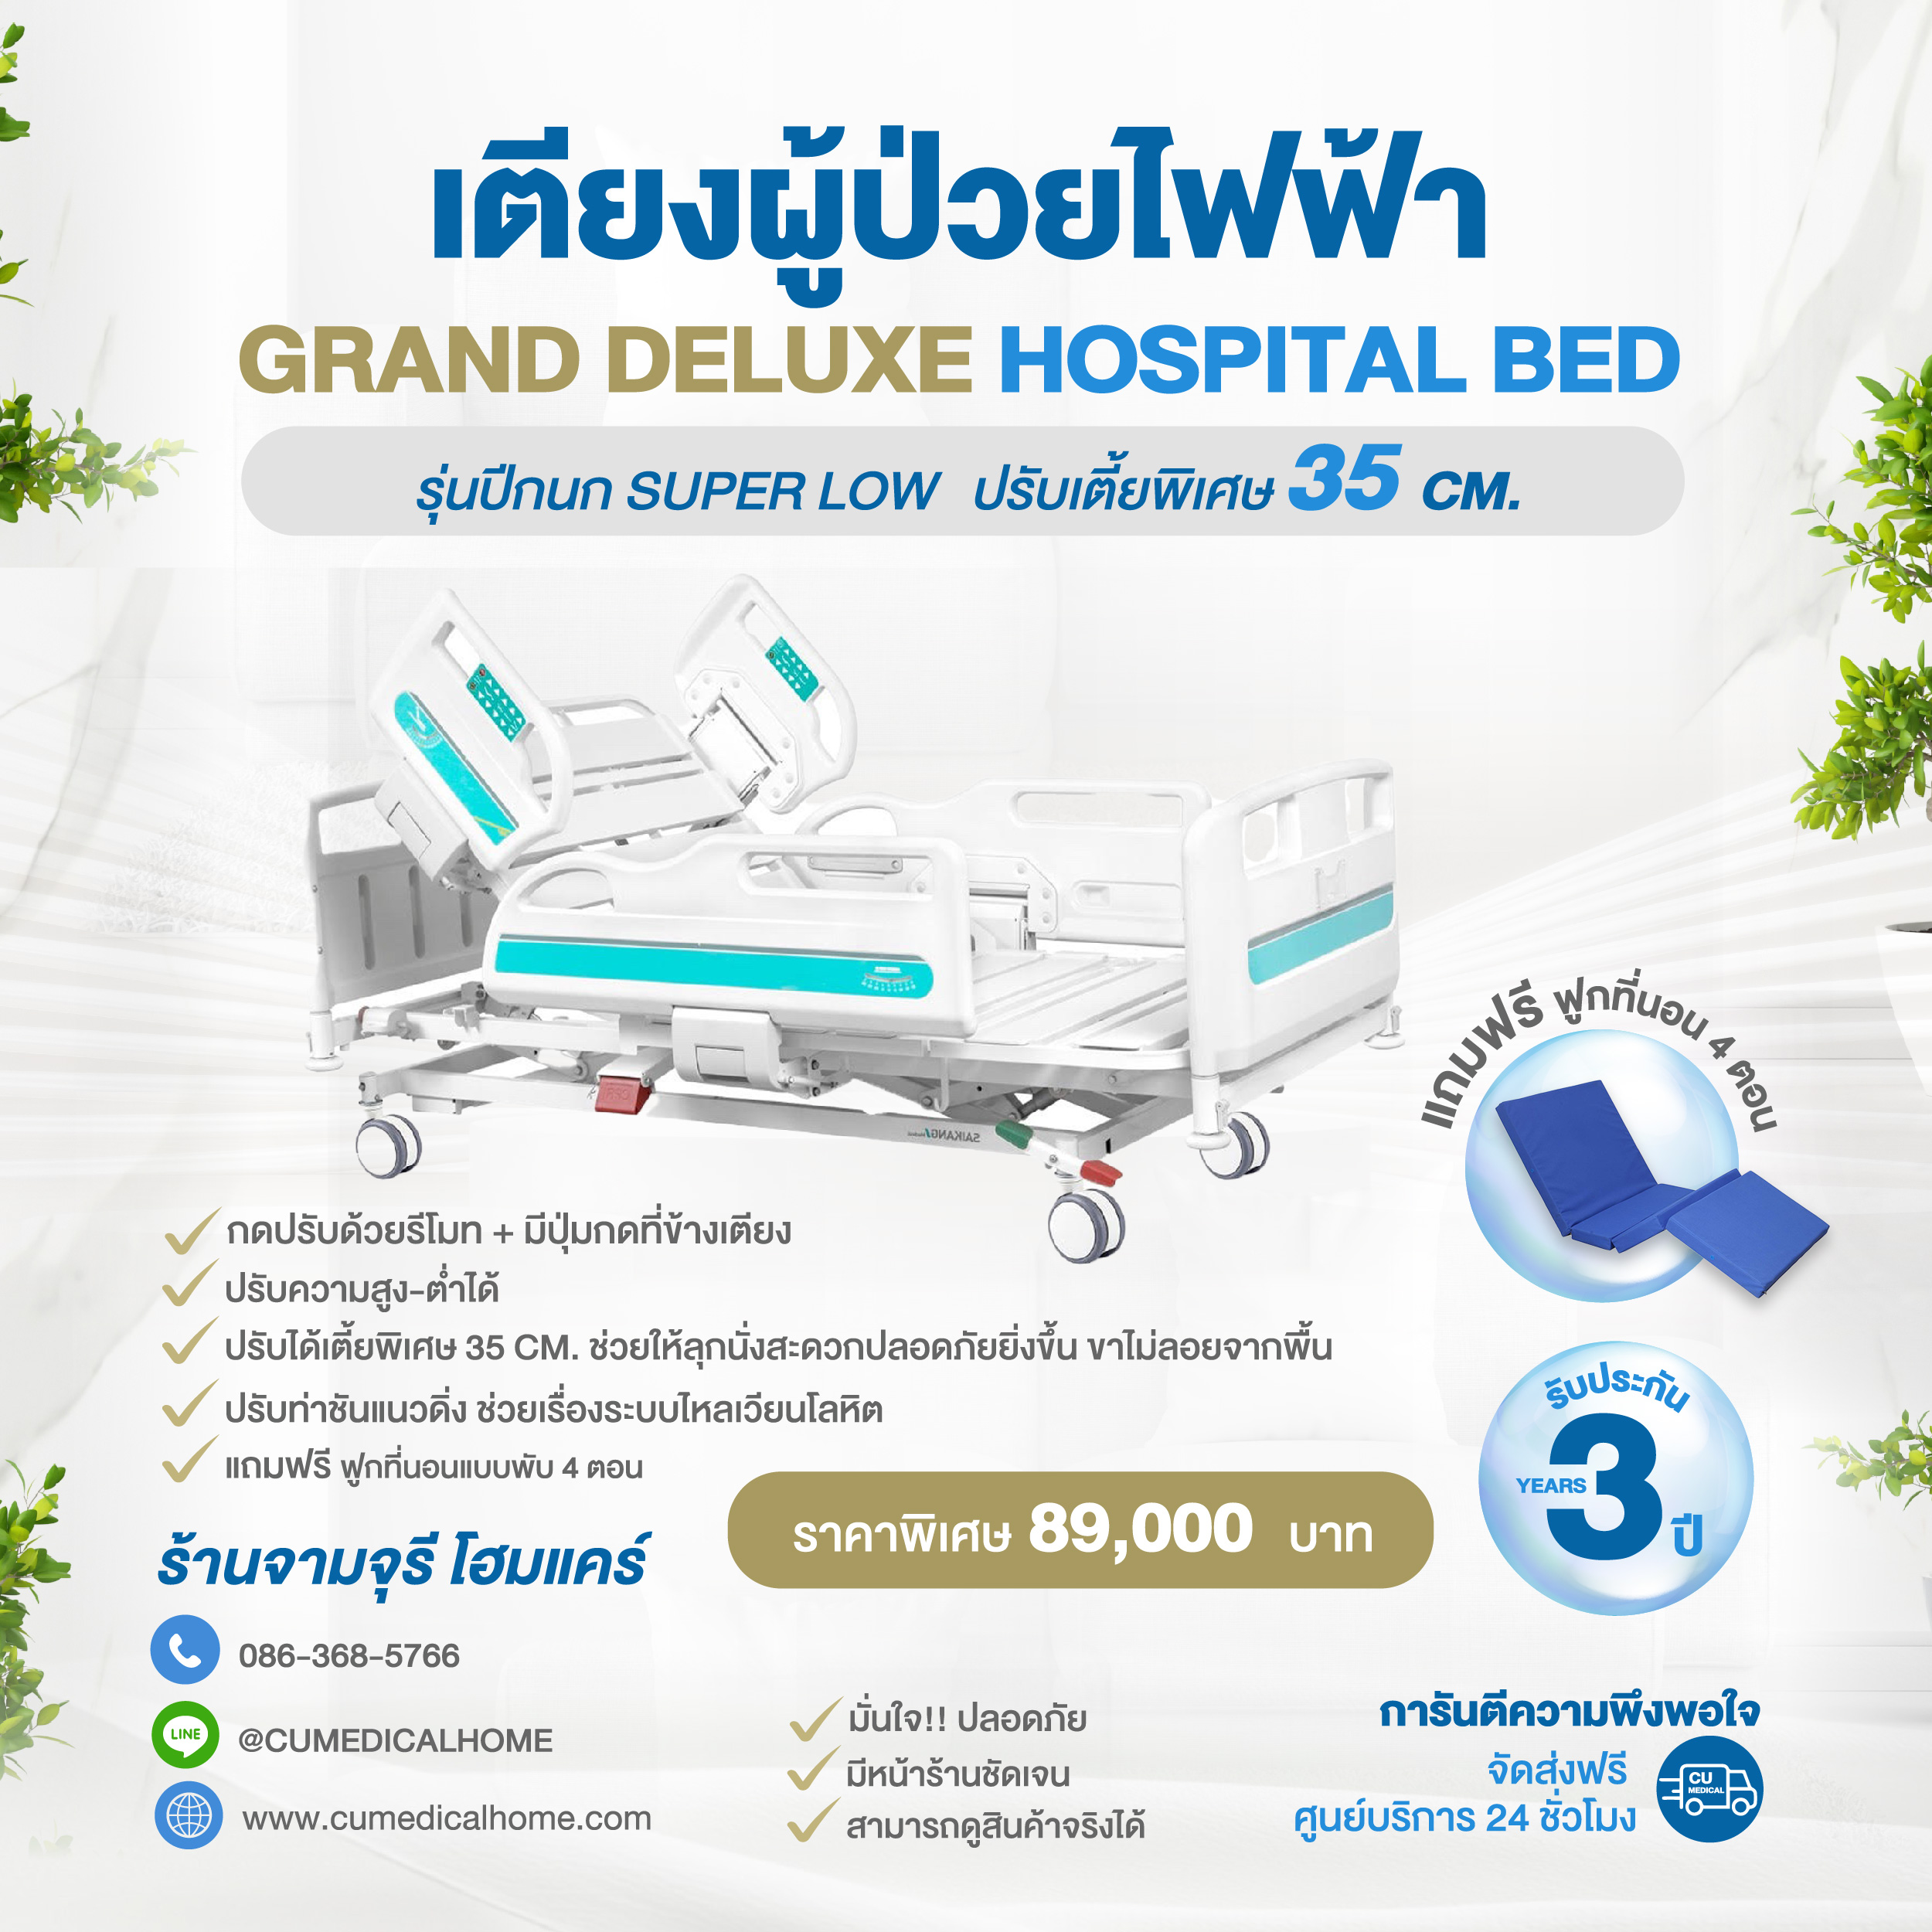 เตียงผู้ป่วยไฟฟ้า รุ่นปีกนก Grand Deluxe Hospital Bed